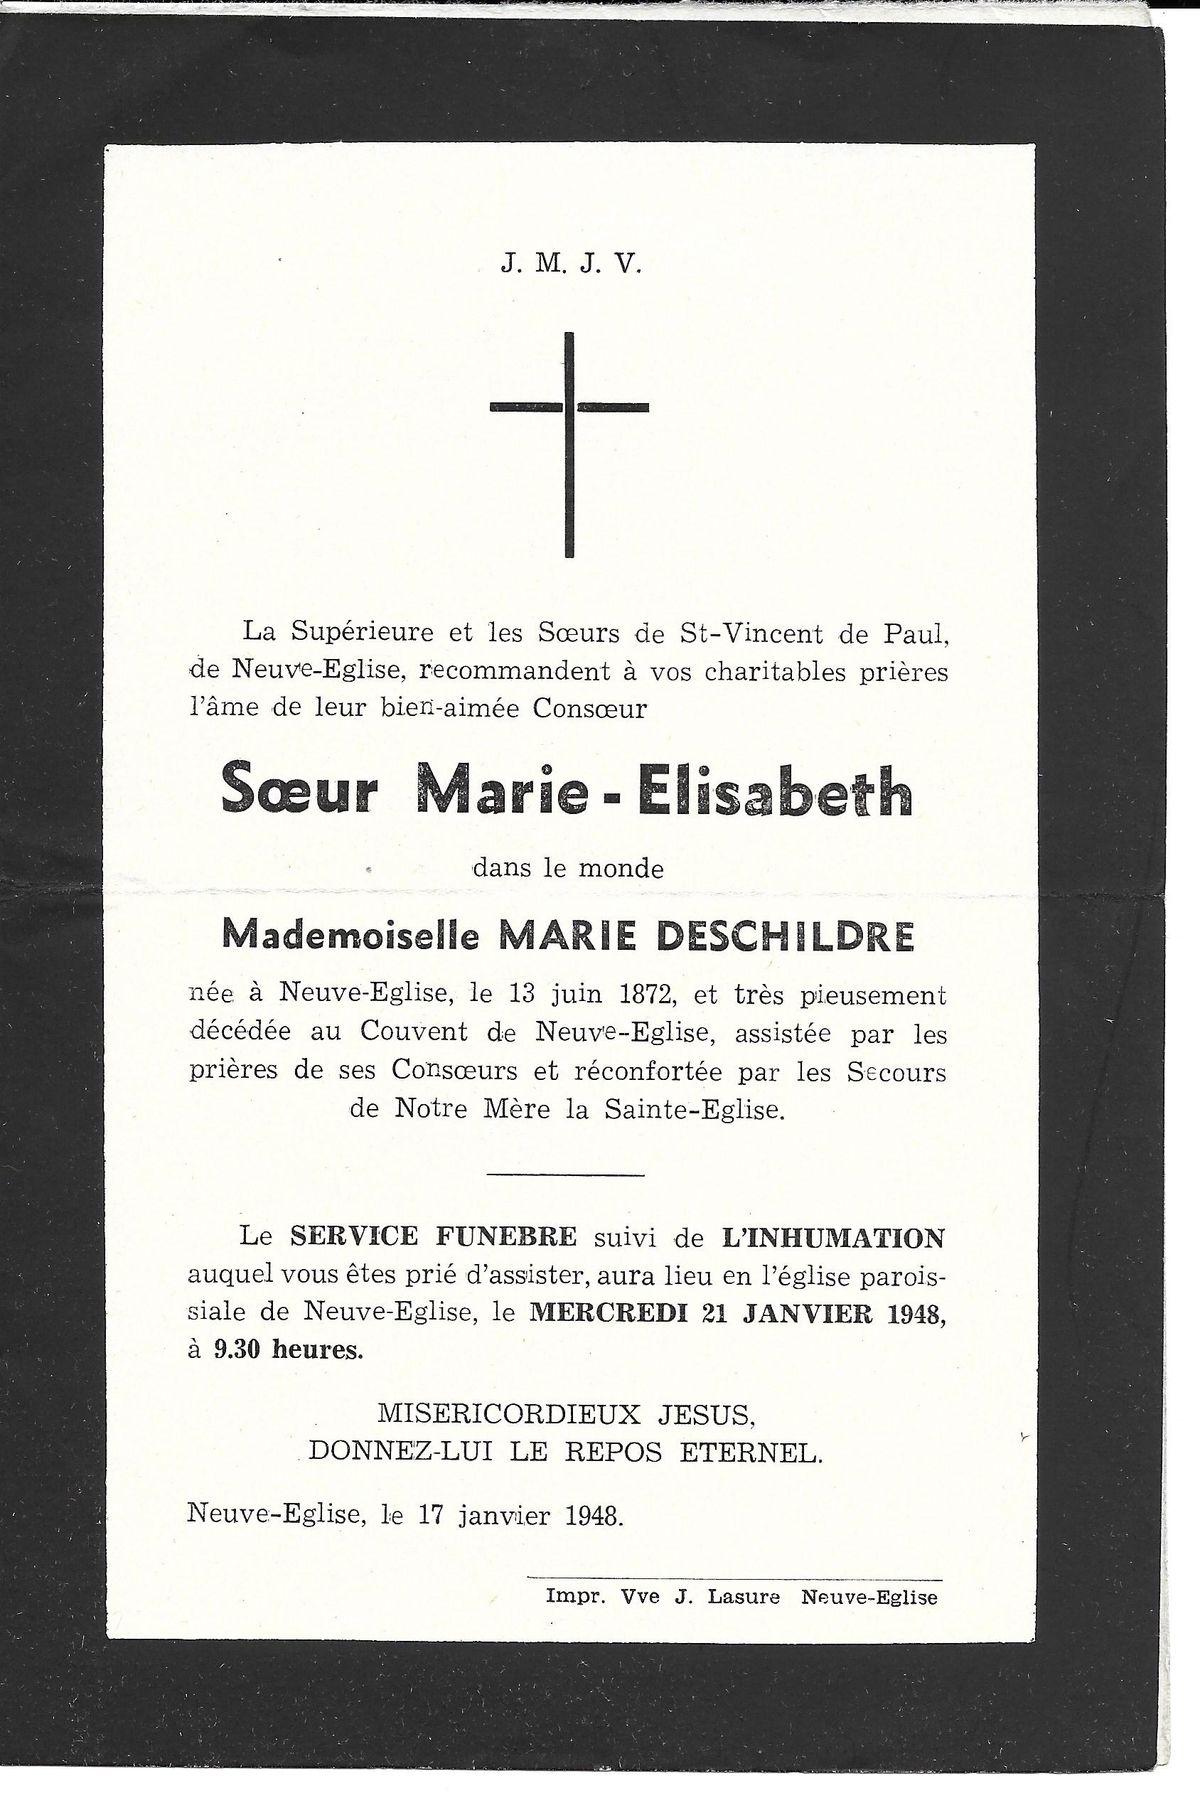 Marie DESCHILDRE 17/01/1948